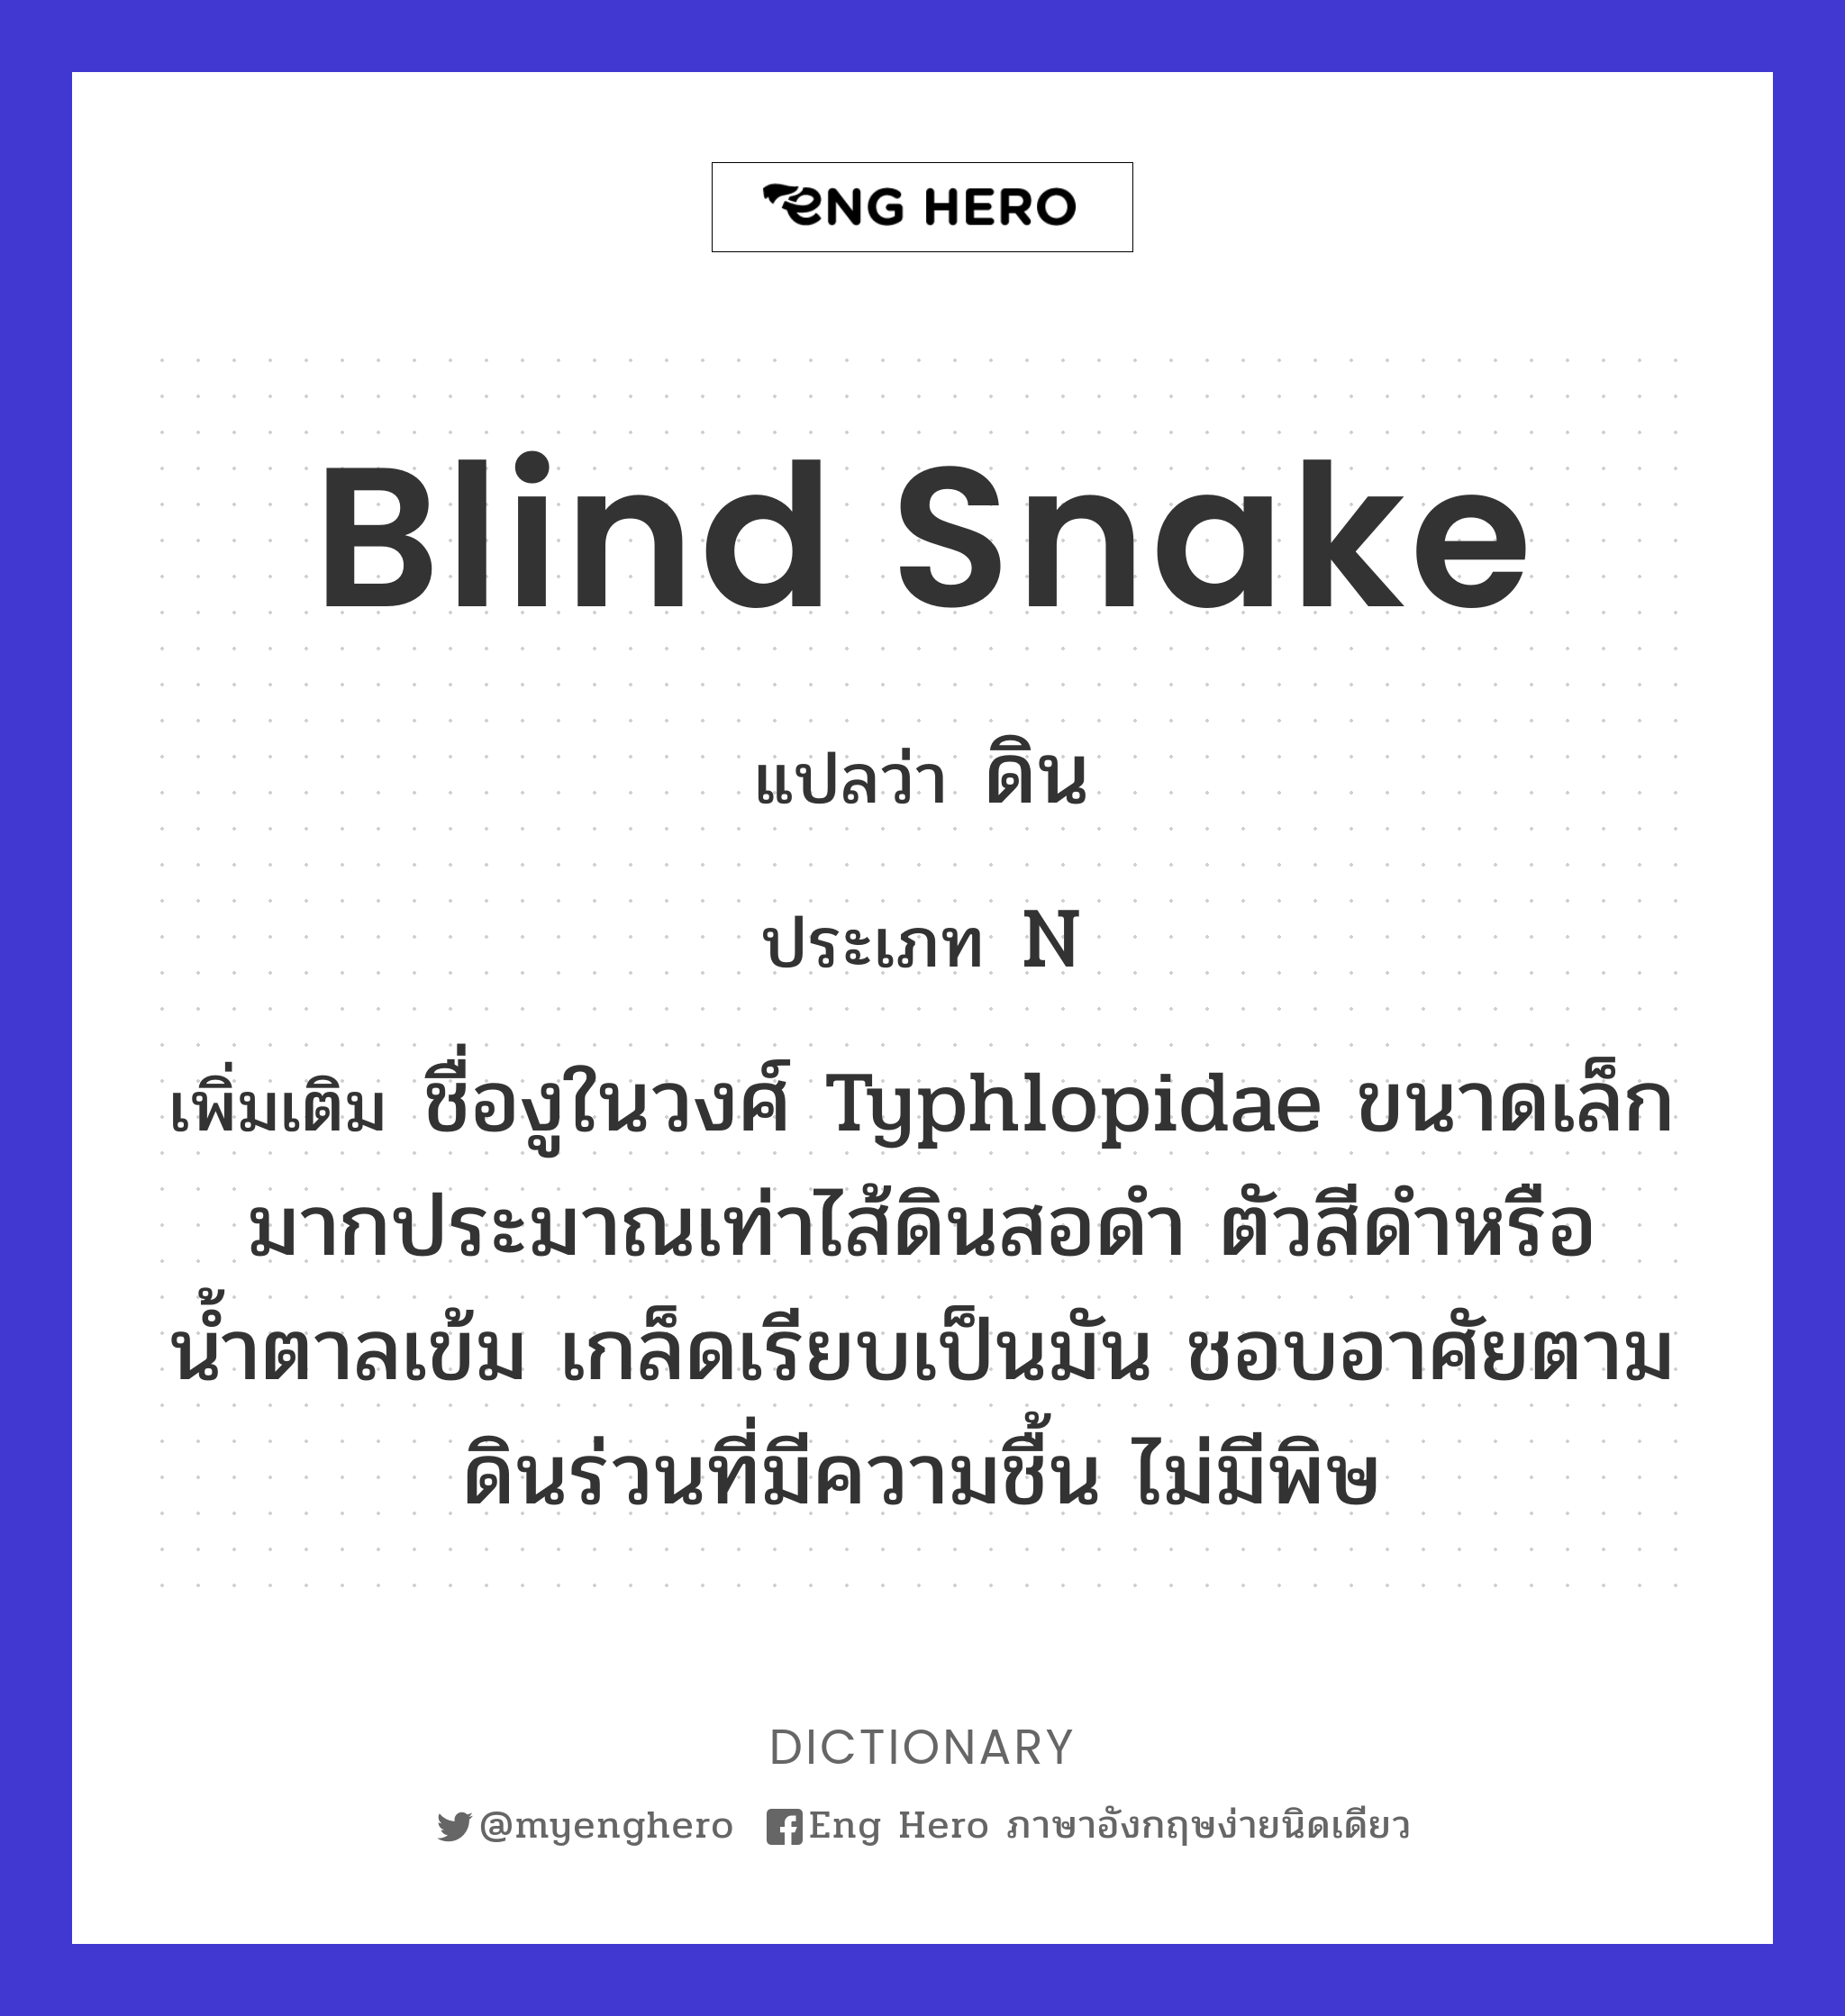 blind snake